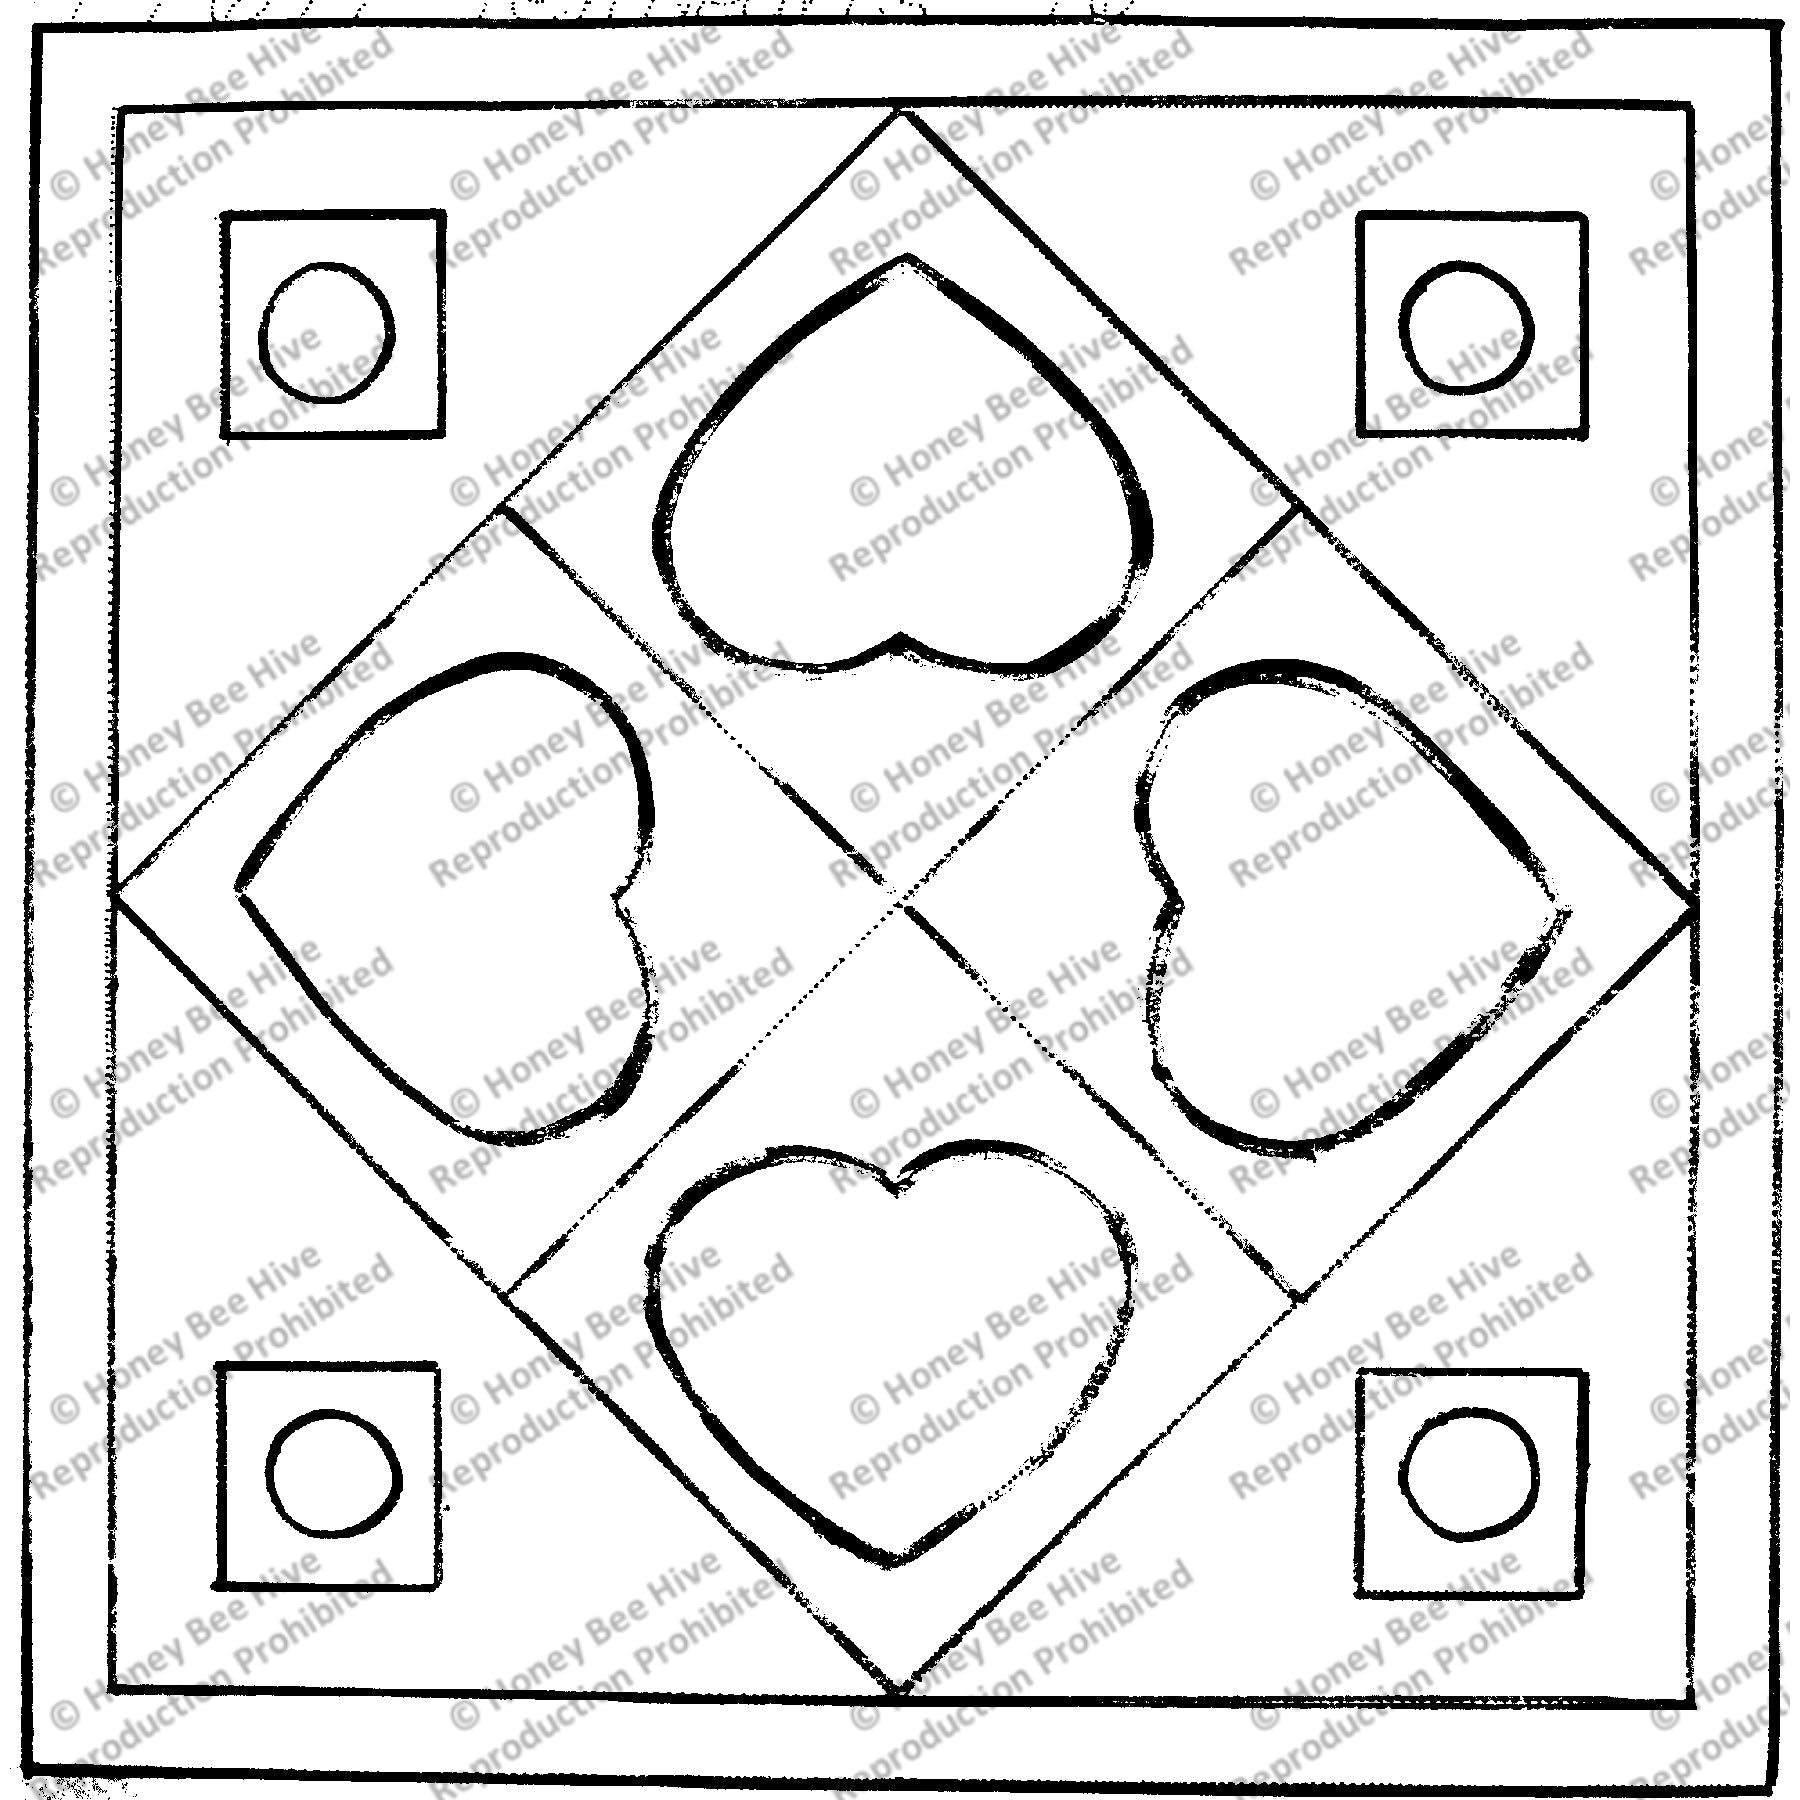 Ten Hearts, rug hooking pattern